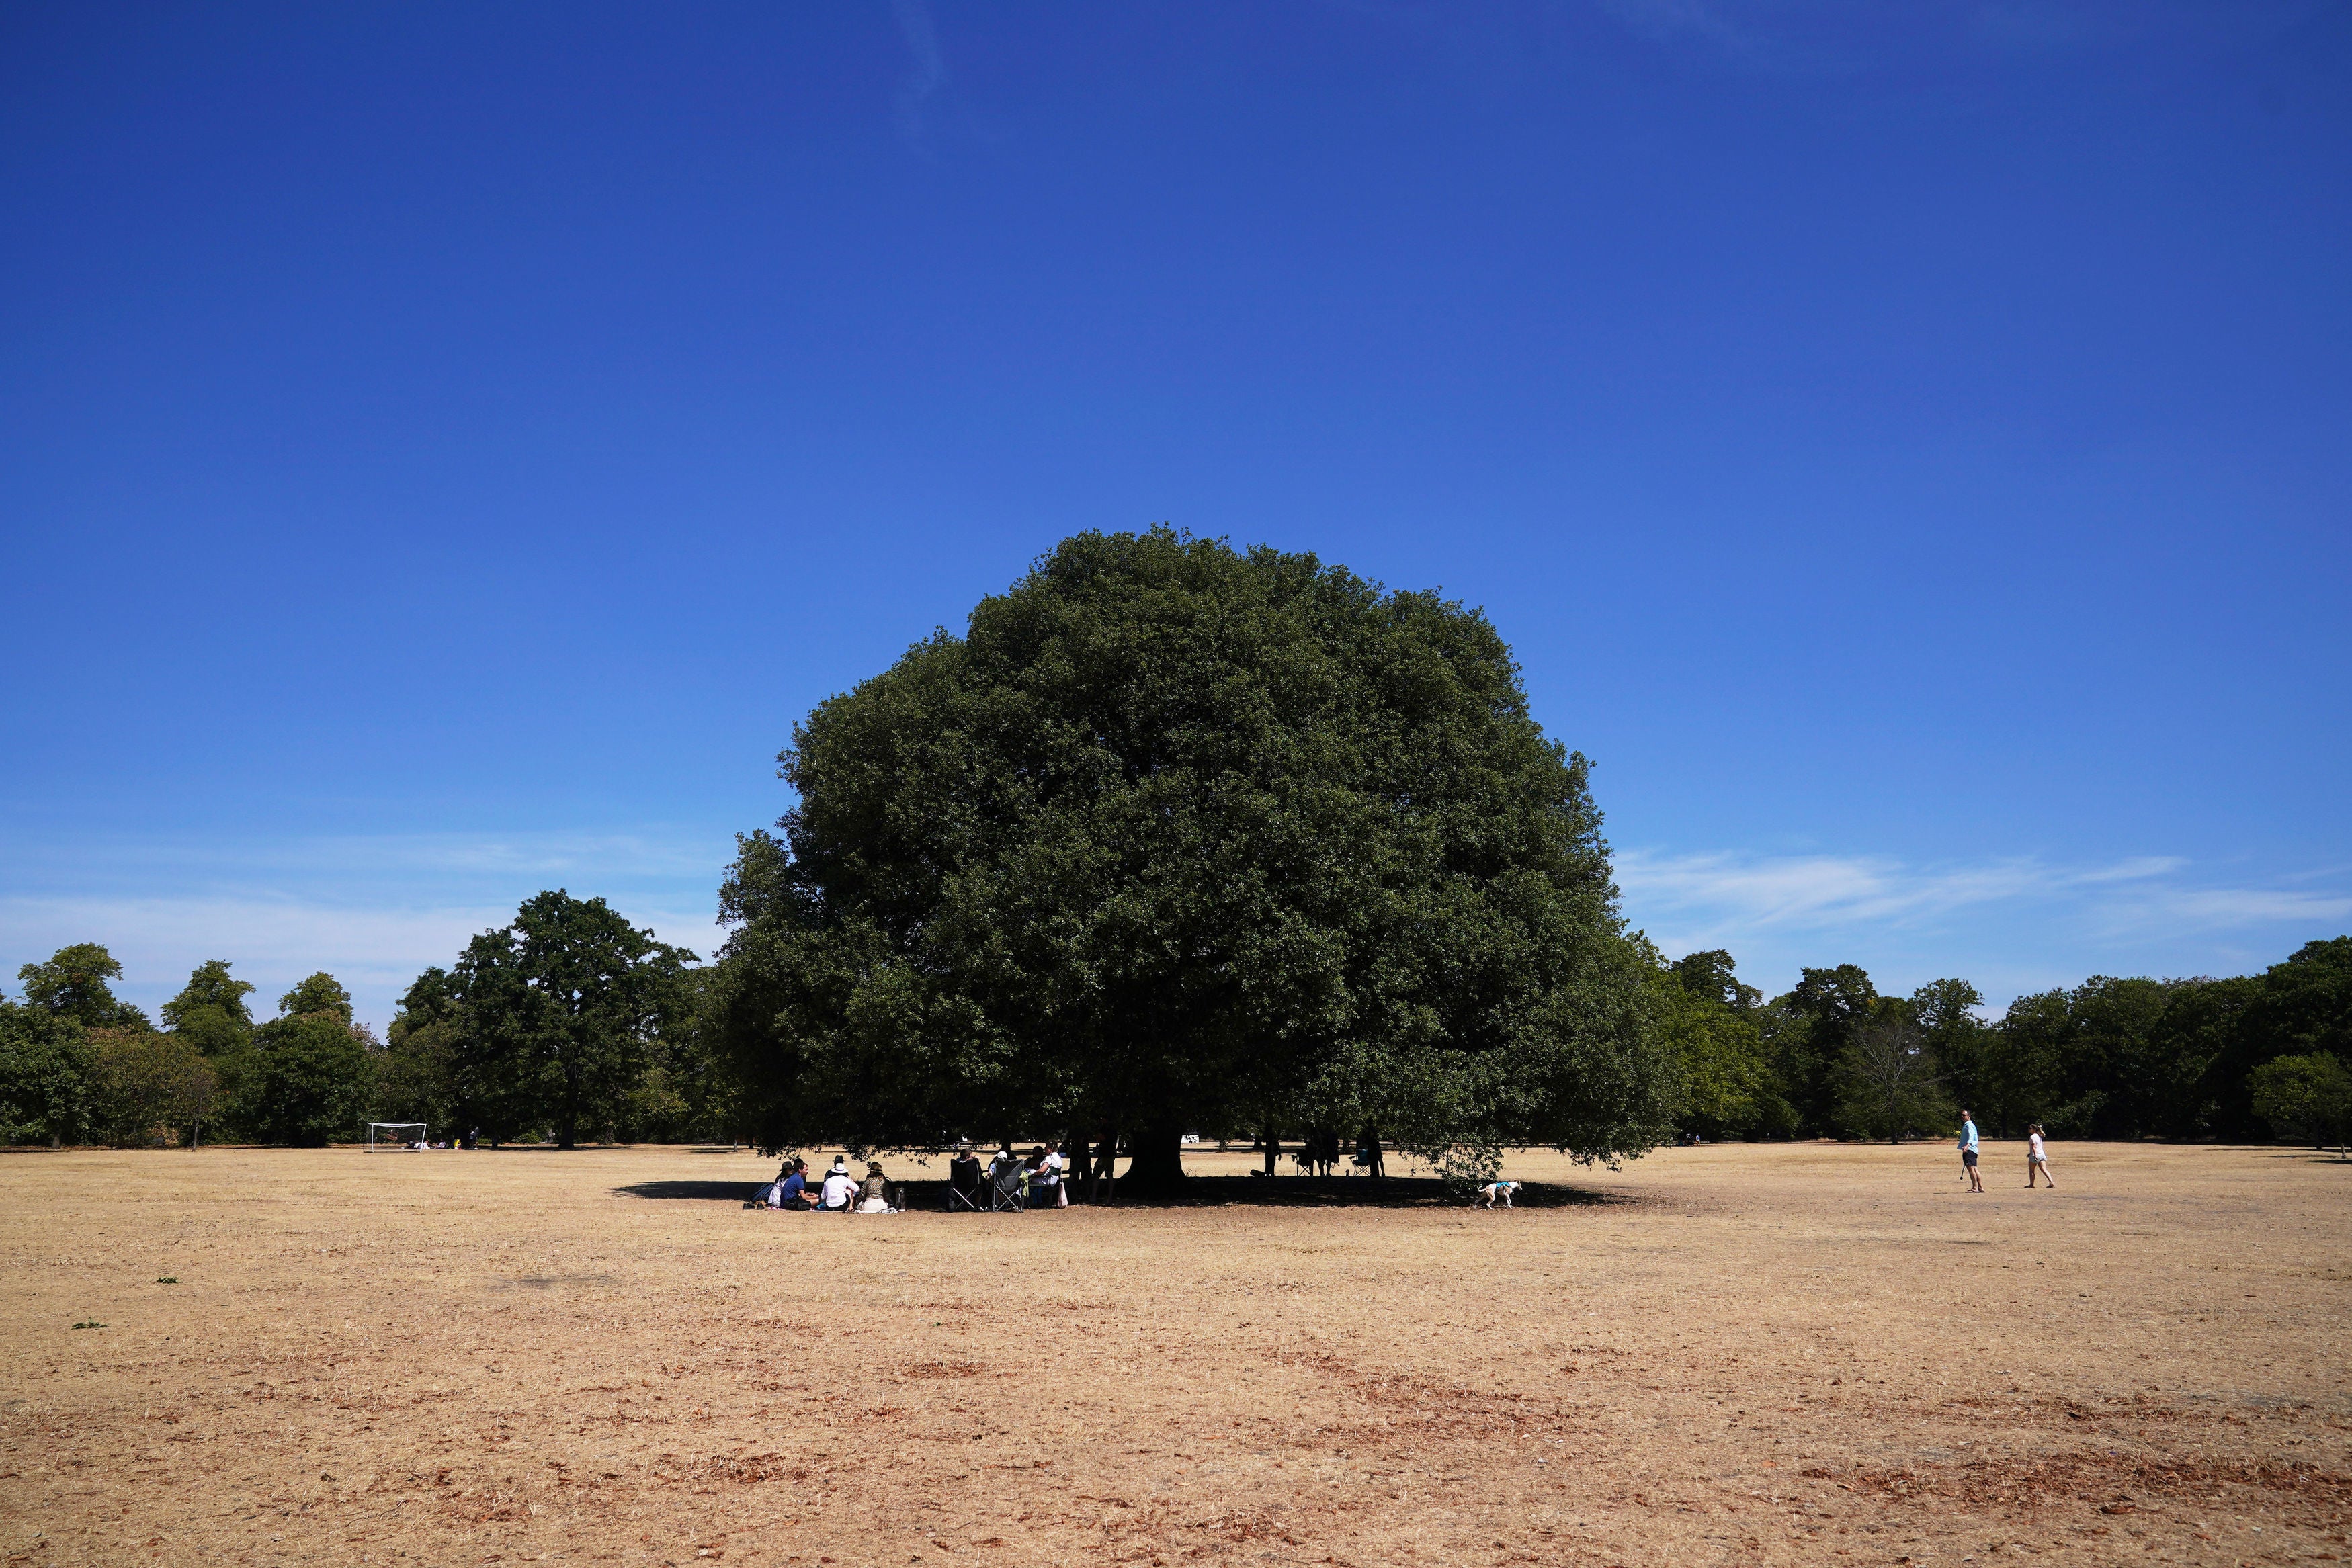 People sit under a tree in Greenwich Park in London.